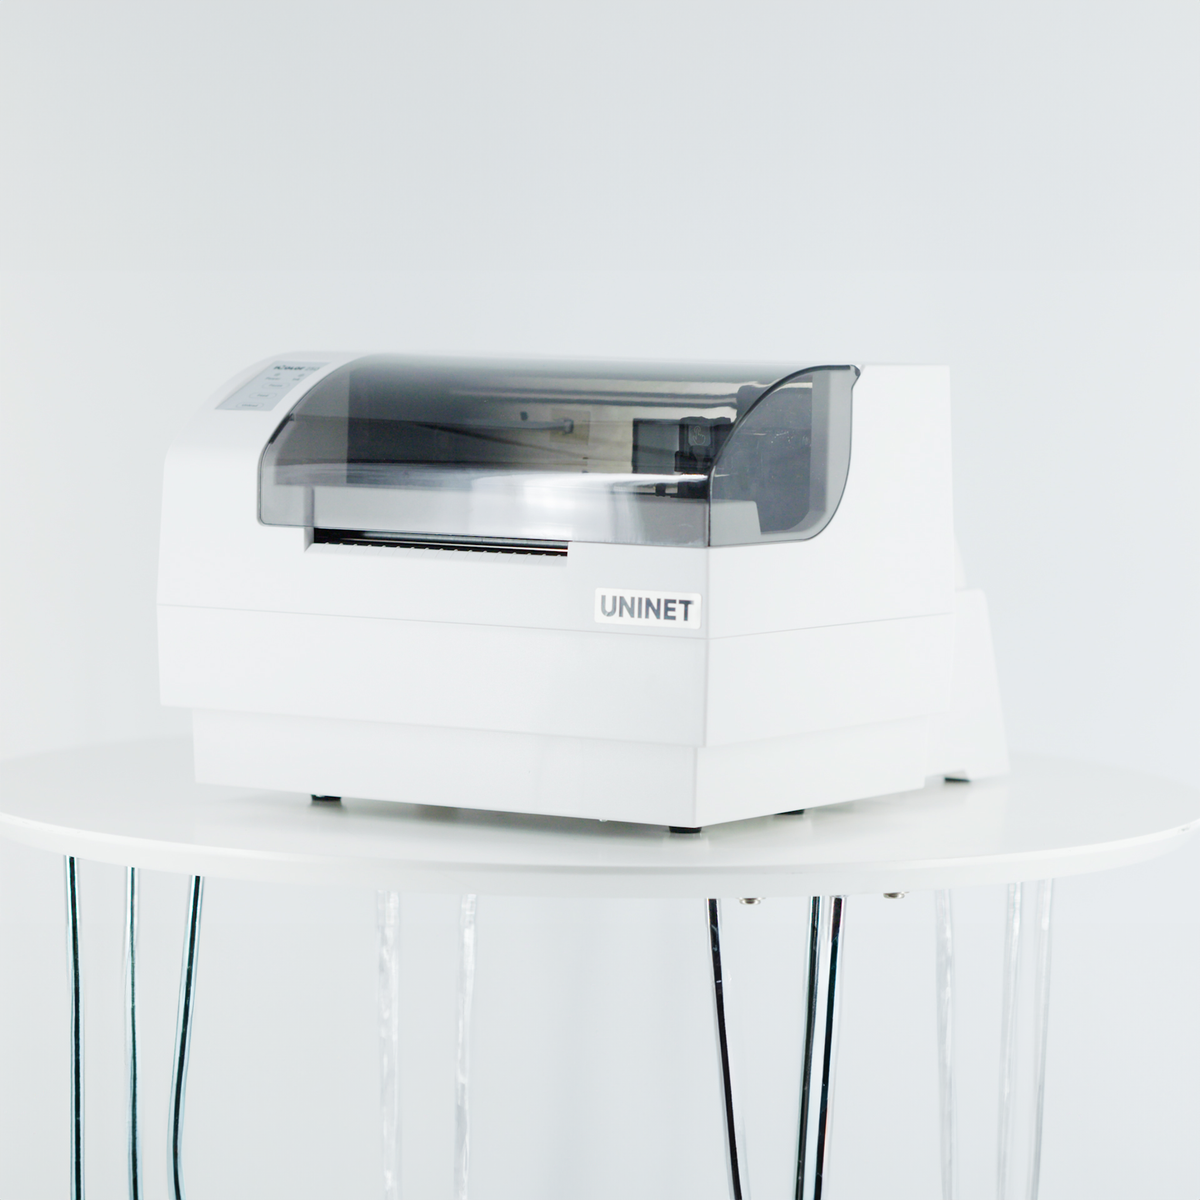 iColor 250 Inkjet Color Label Printer & Cutter